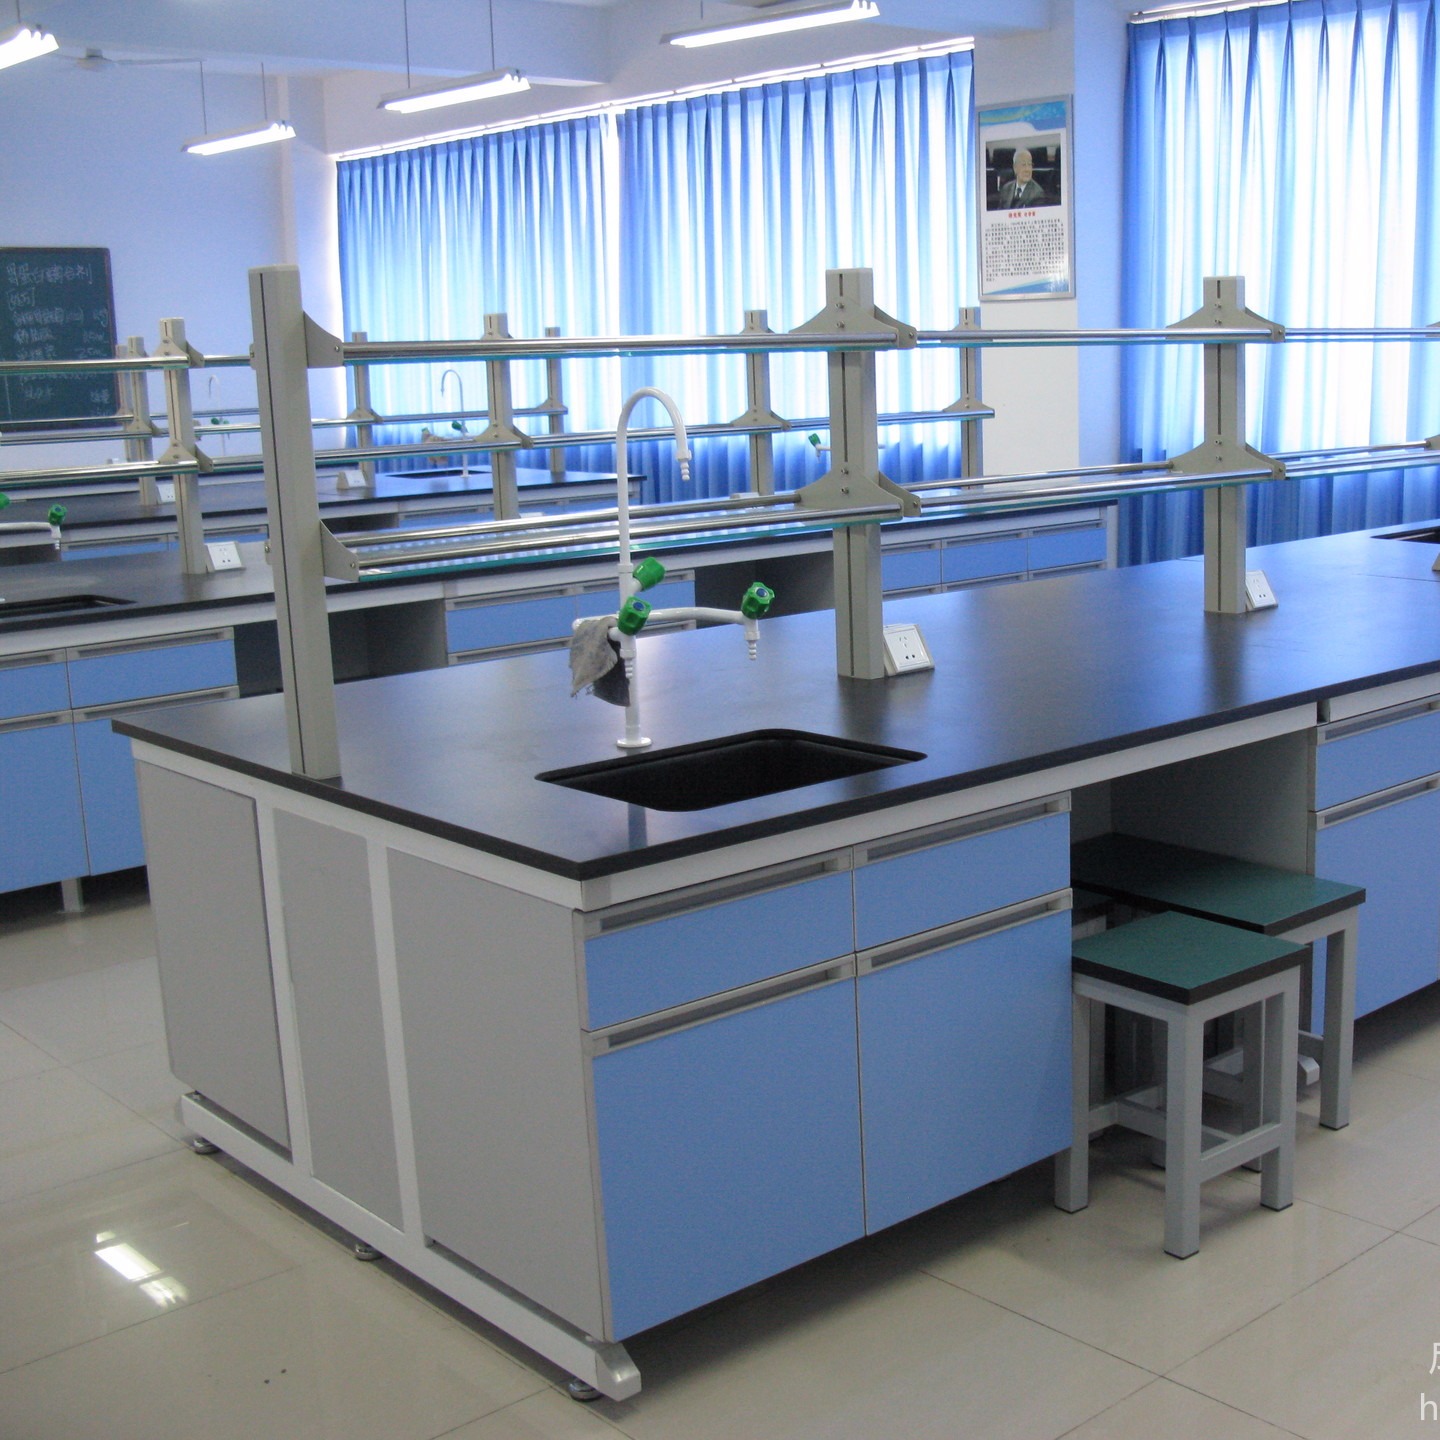 四川省卫生  学校实验台  实验柜  展示陈列柜  专业生产定制